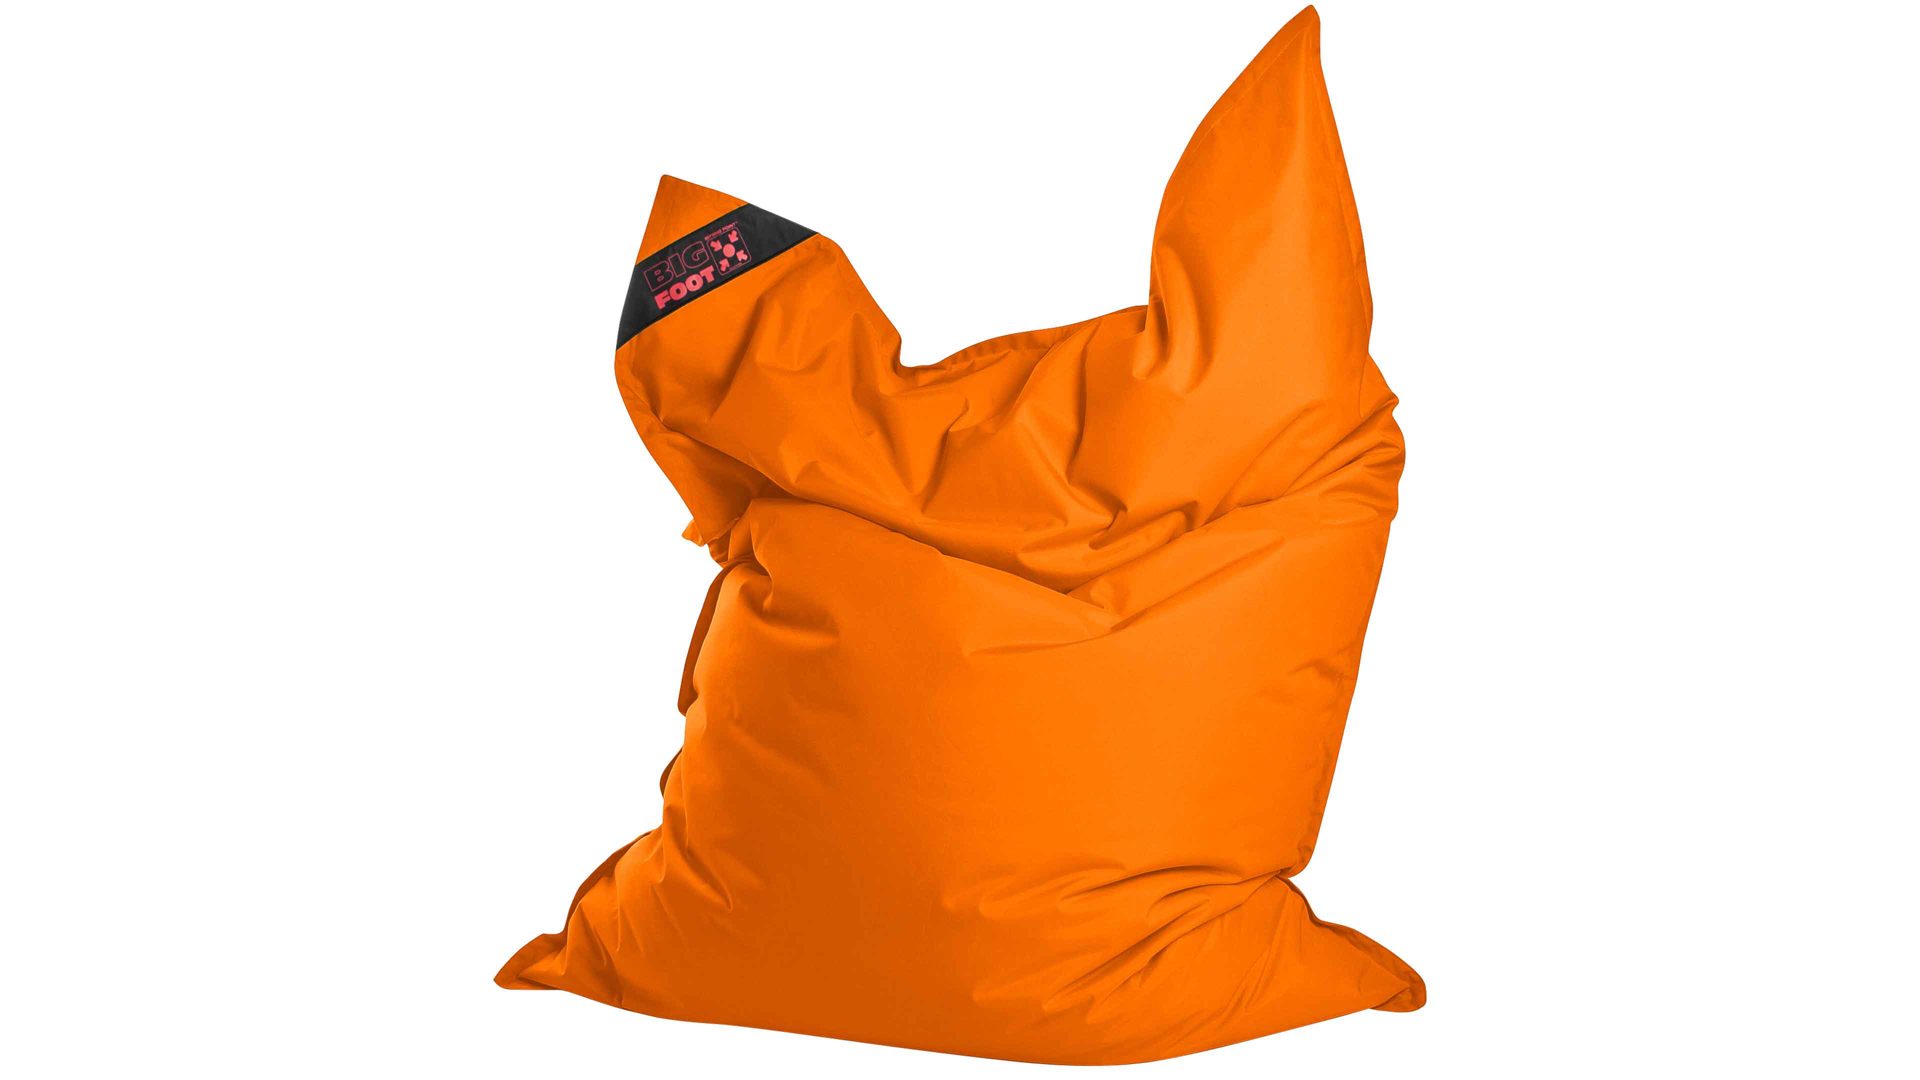 Sitzsack-Bodenkissen Magma sitting point aus Kunstfaser in Orange SITTING POINT Sitzsack bigfoot scuba® - Sitzmöbel orange Kunstfaser - ca. 130 x 170 cm